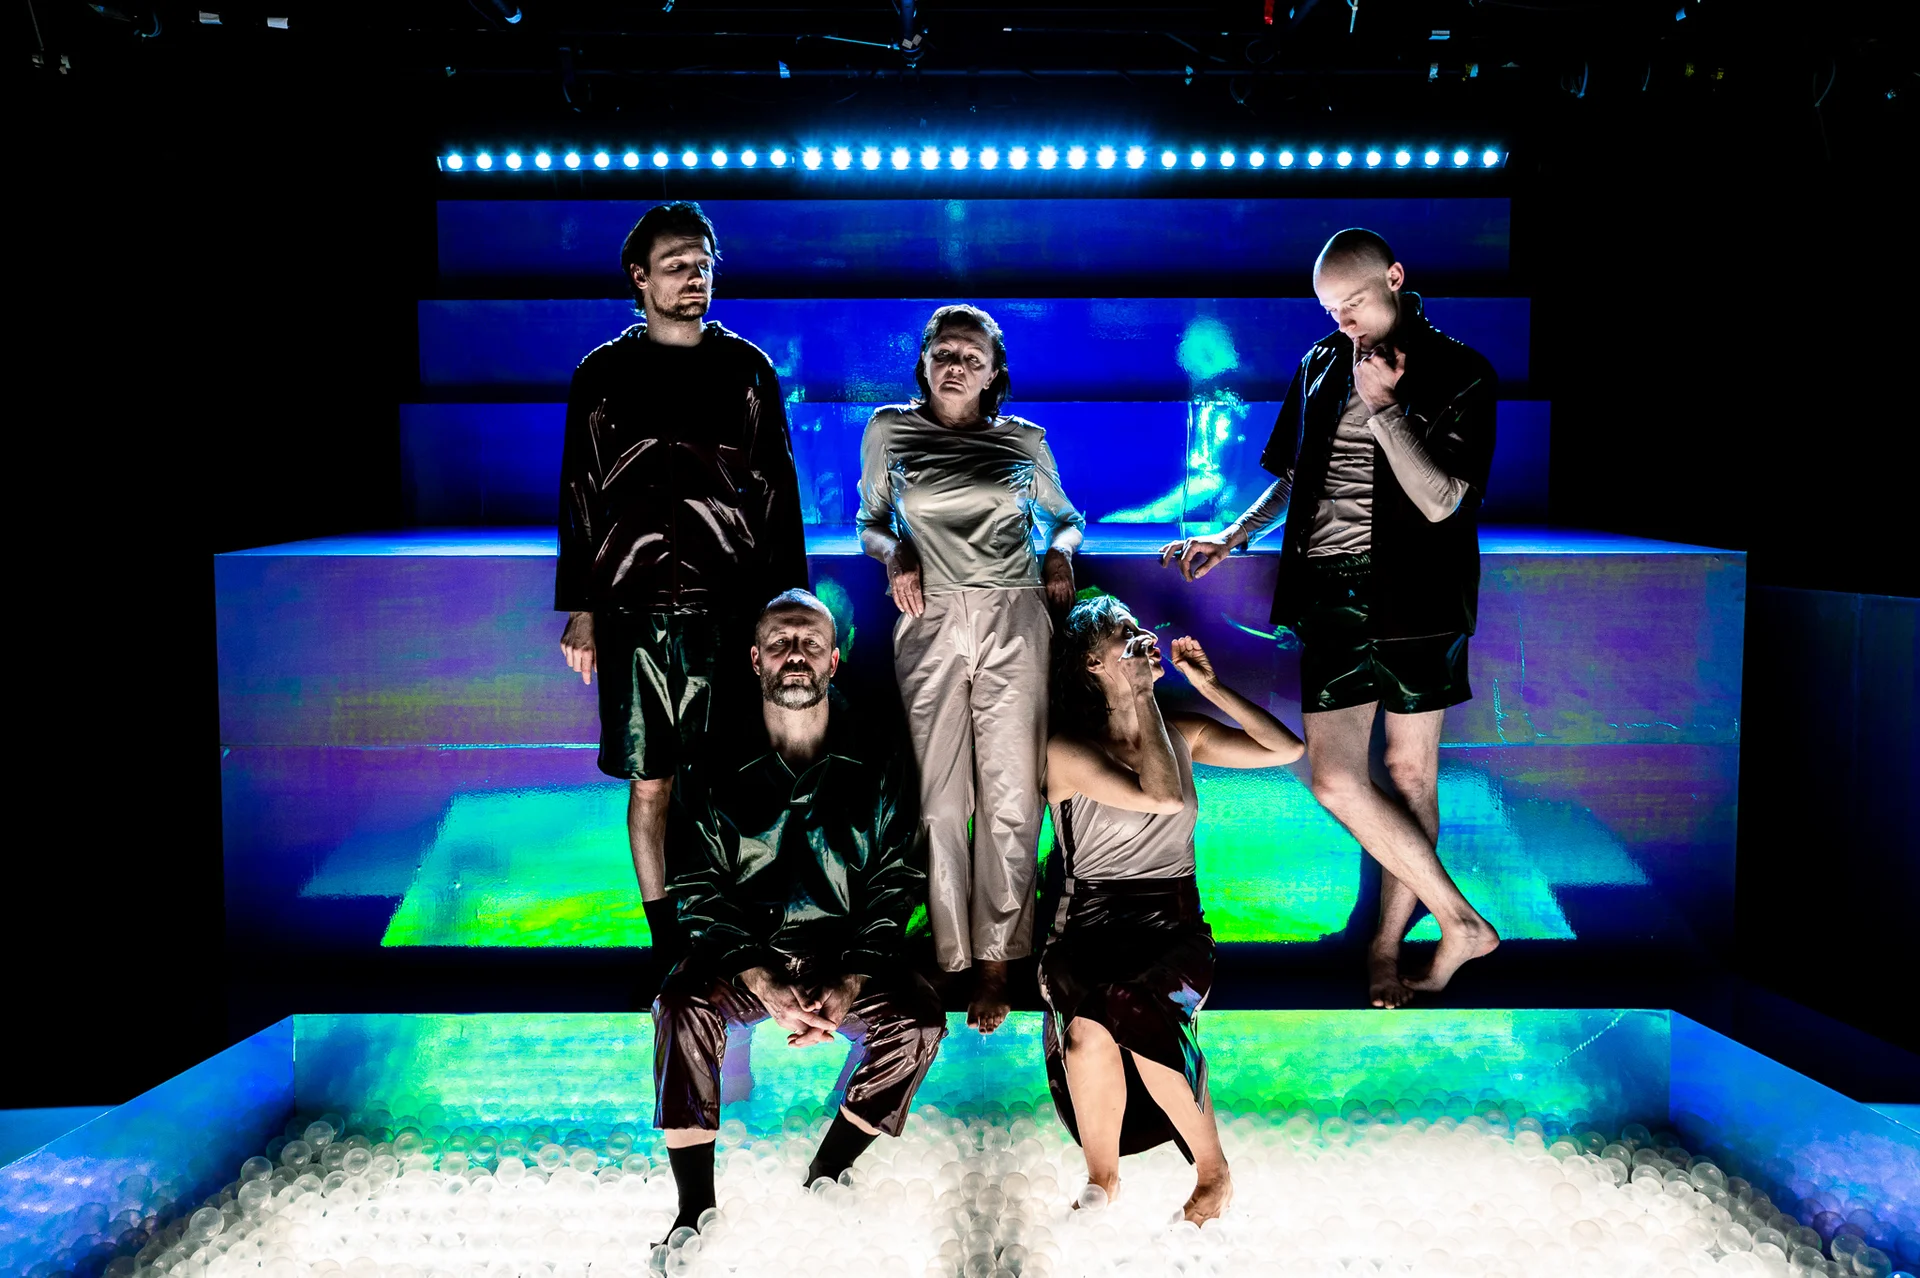 Grupa aktorów w skórzanych kostiumach siedzi na podświetlonych elementach scenografii.